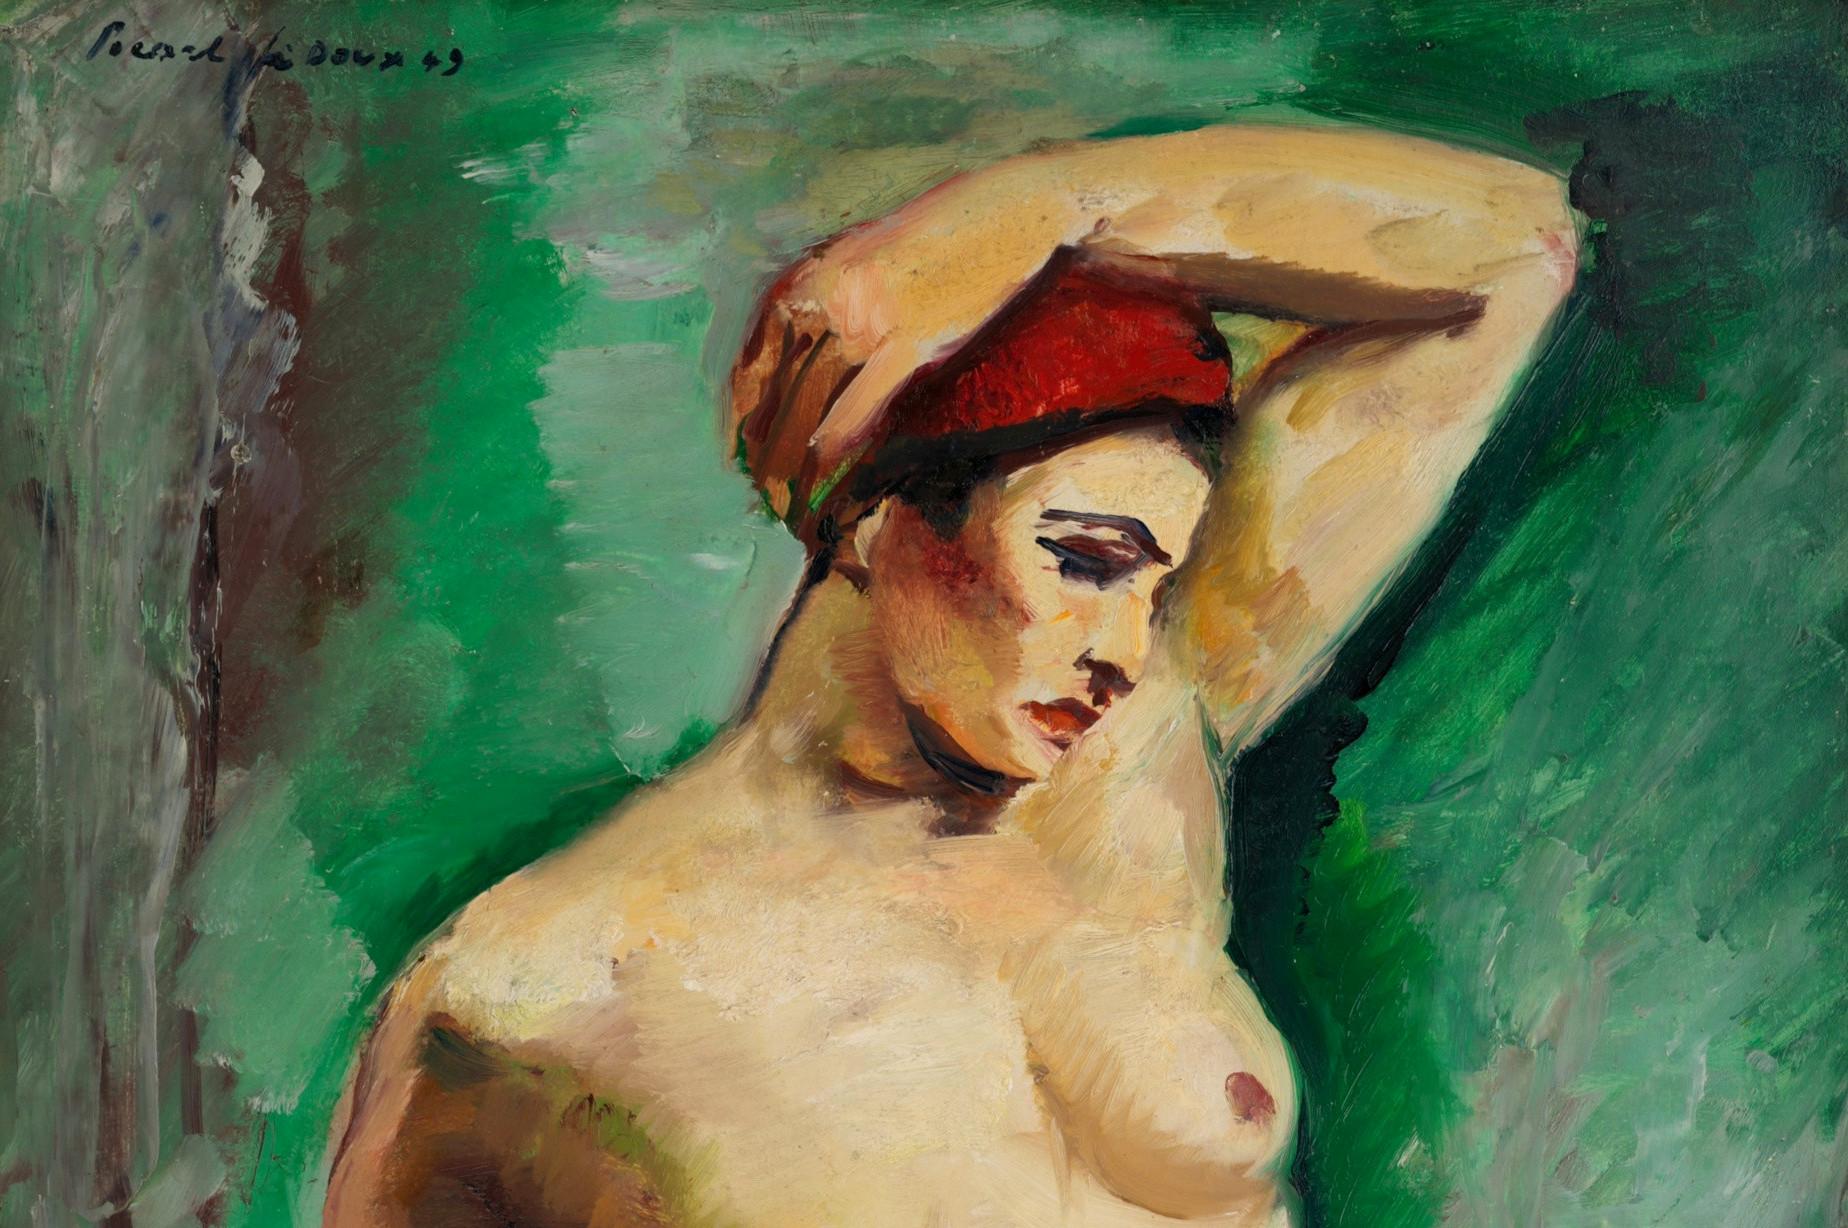 Charles PICART LE DOUX, Modell auf grünem Hintergrund, Öl auf Isorel, 1949 (Post-Impressionismus), Painting, von Charles Picart le Doux